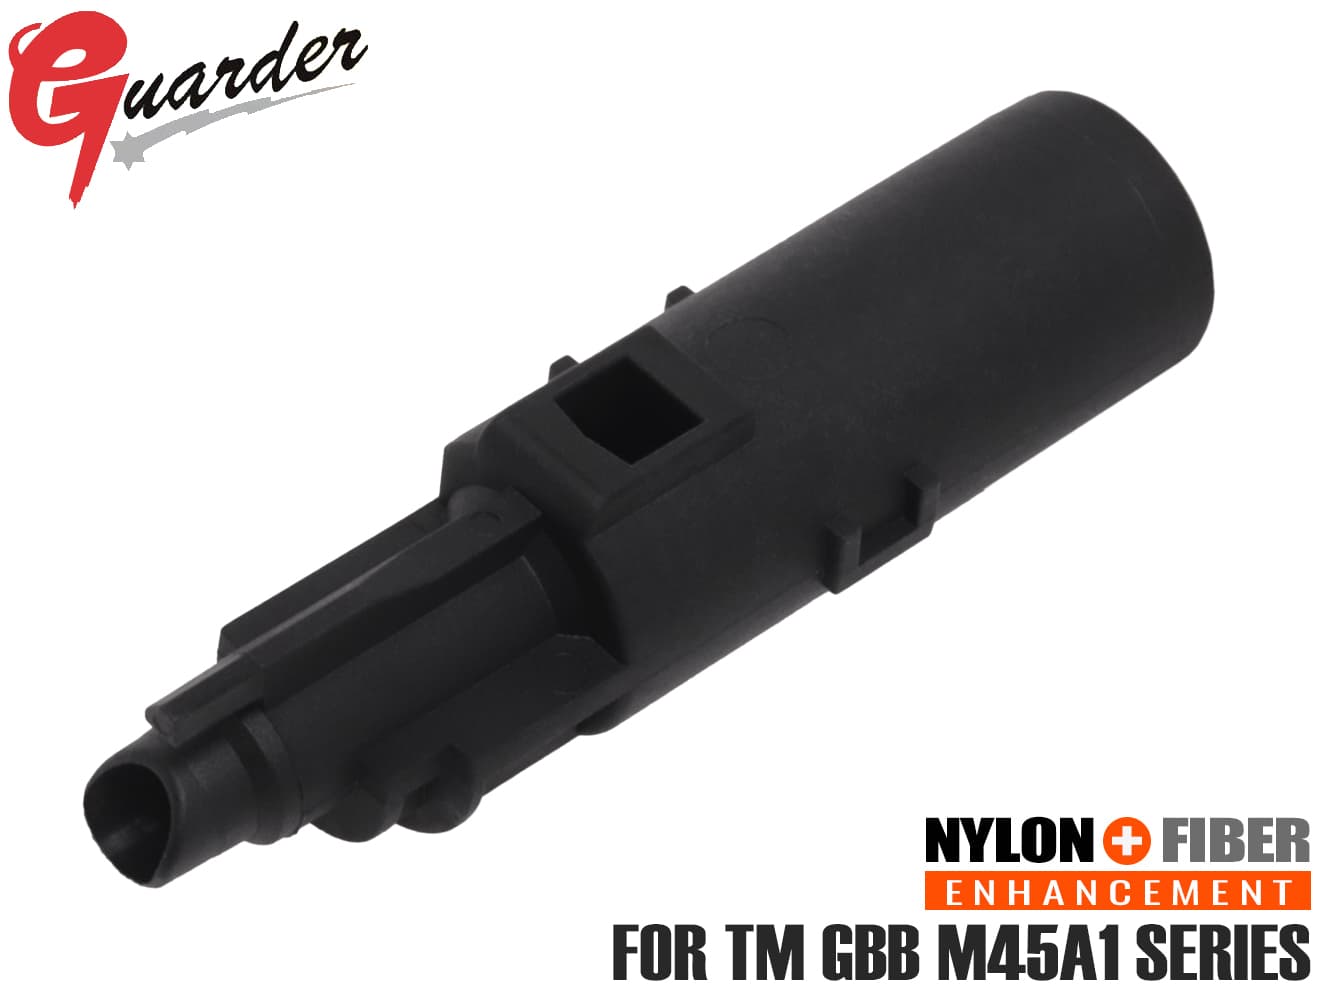 M45A1-13■GUARDER ナイロン+ファイバー 強化ローディングノズル for マルイ M45A1◆弾性に優れた素材 強度 硬度 弾性 耐衝撃性 割れにくい リペア 破損対策